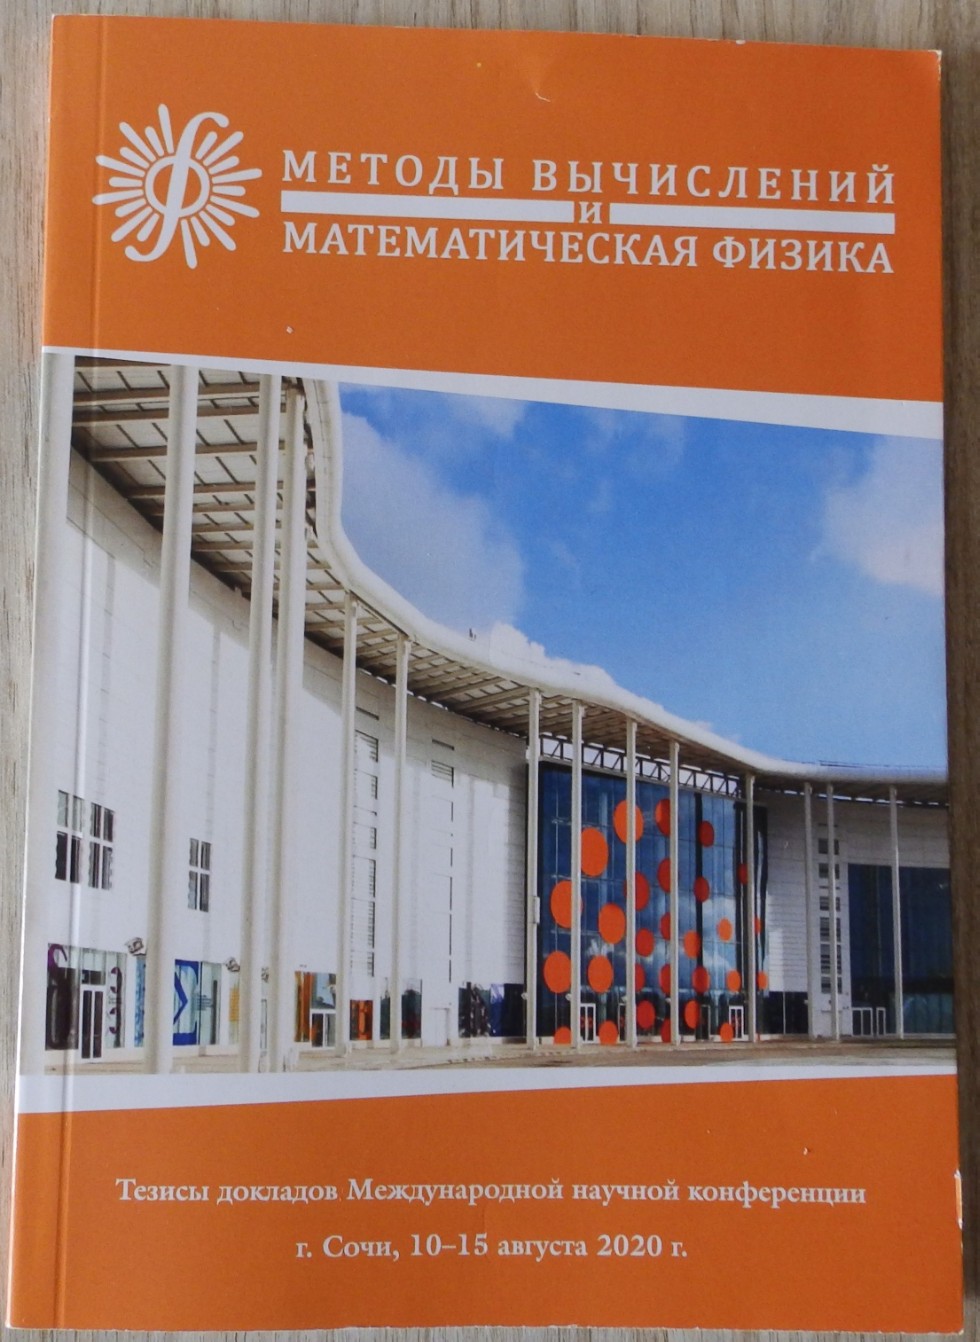 Международная научная конференция  ,научная конференция, методы вычислений и математическая физика, кафедра прикладной математики